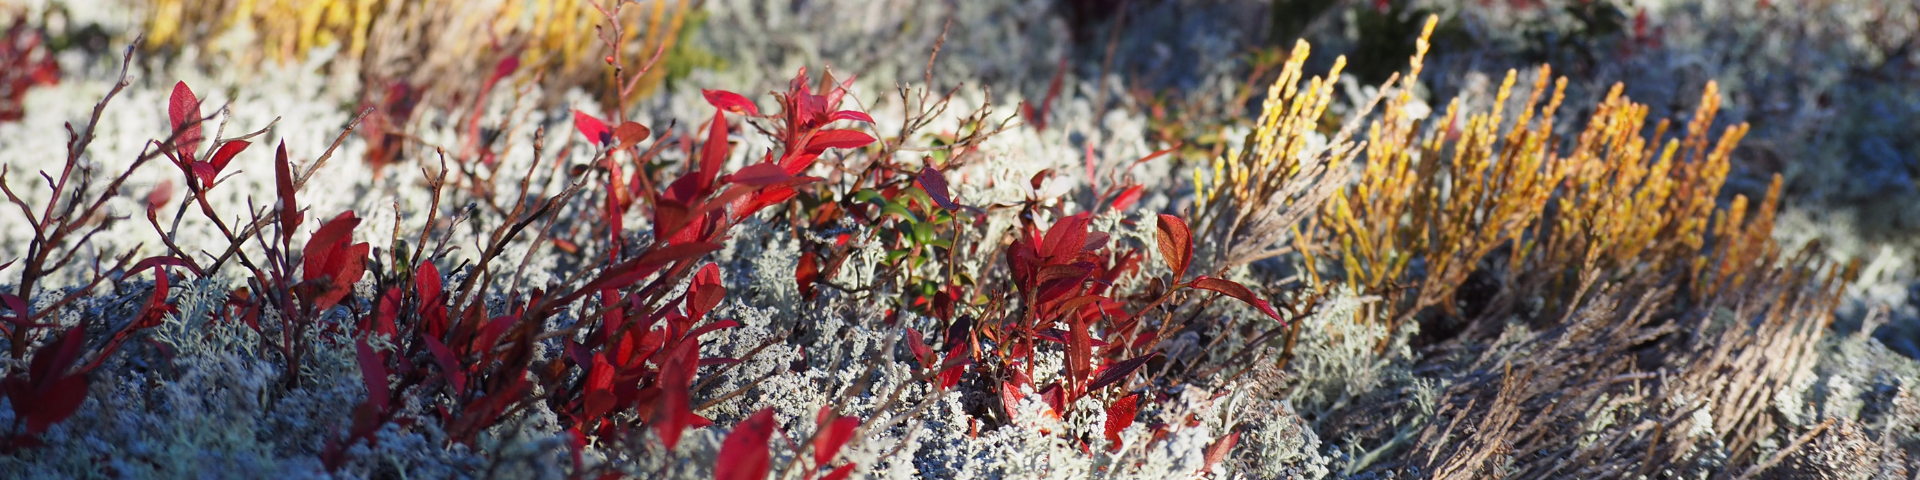 Plantes et lichens dans la taïga de Penouille. 